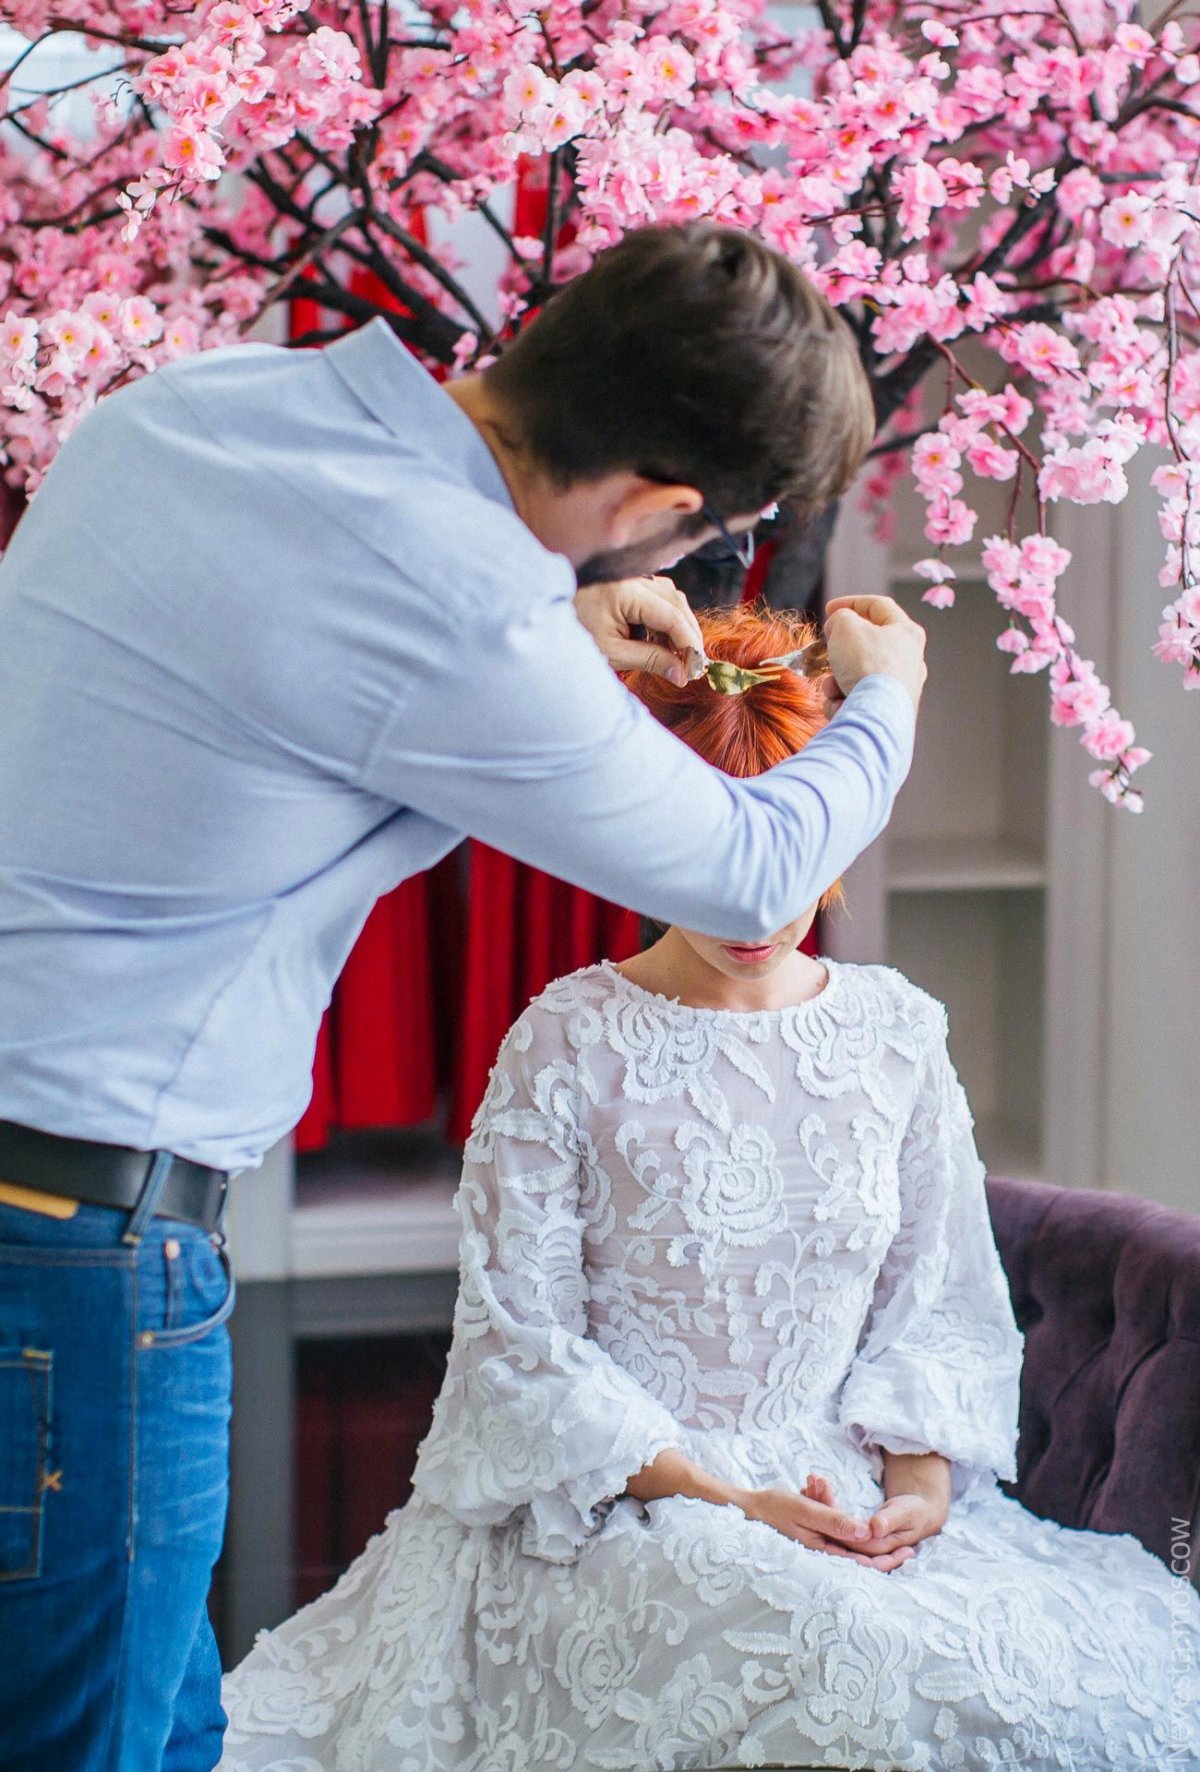 Катерина Кирильчева примеряет свадебное платье